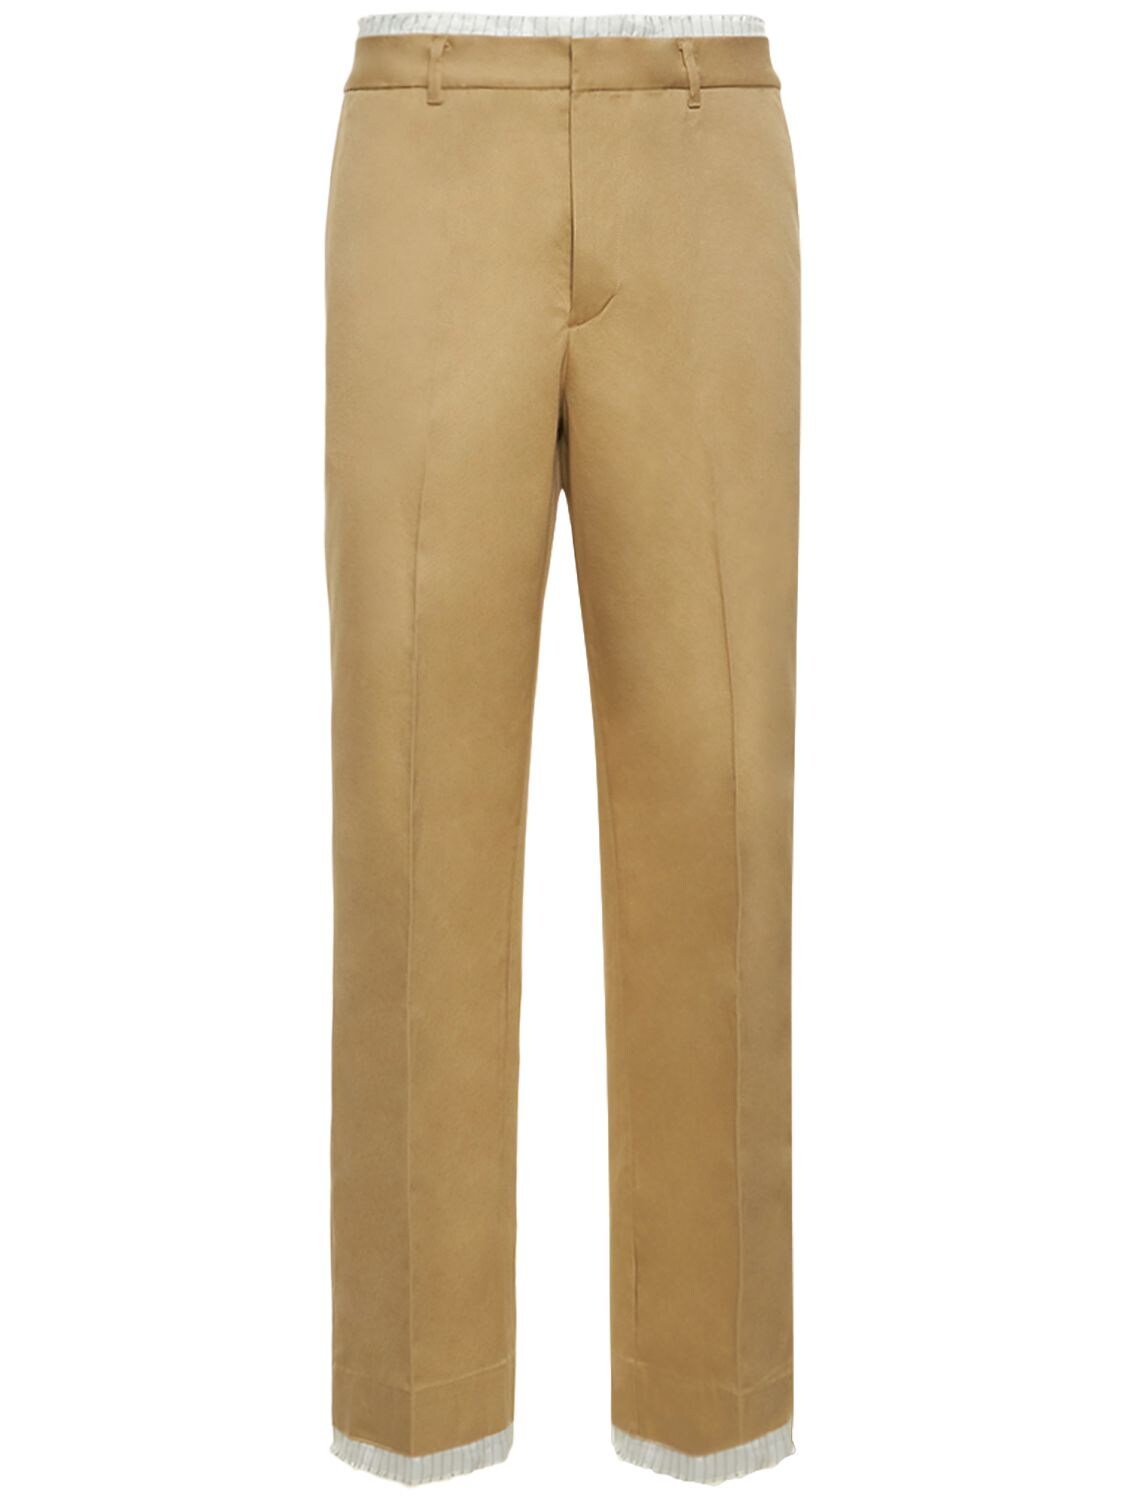 Straight Layered Chino Pants – MEN > CLOTHING > PANTS